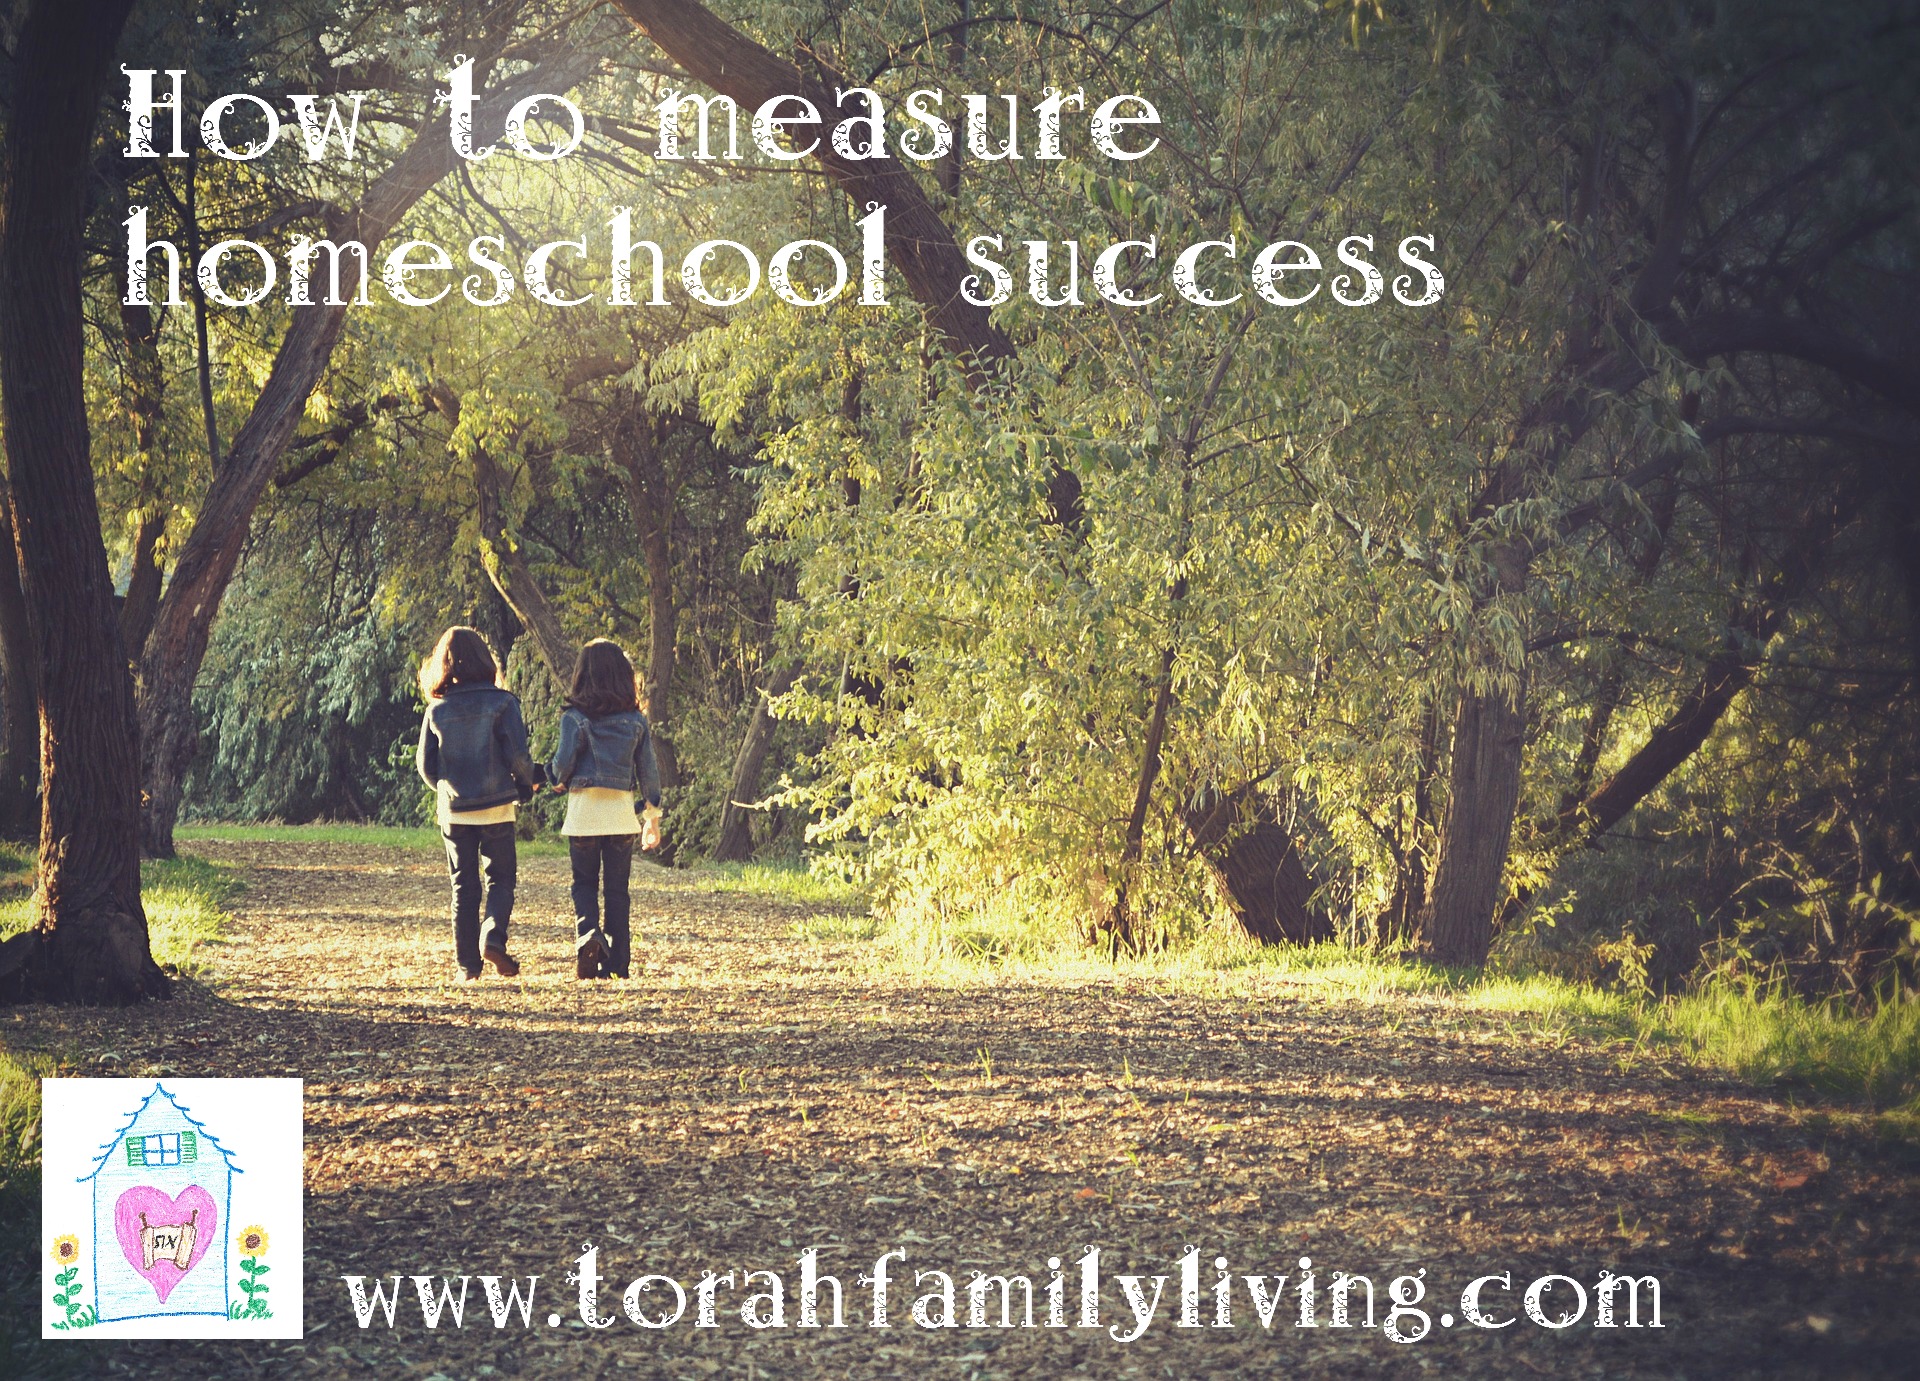 How do we measure homeschool success?